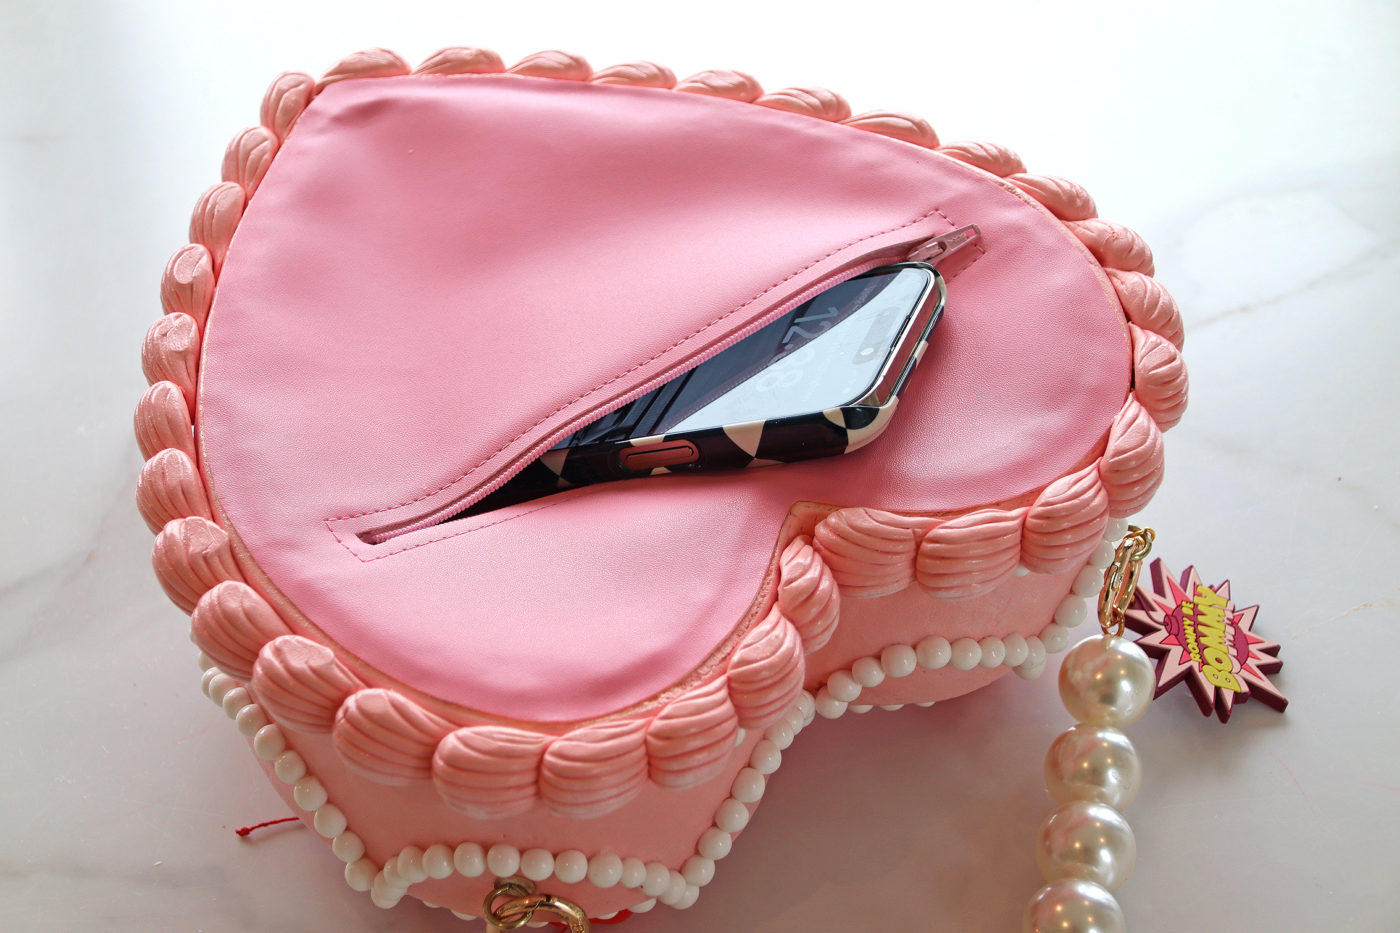 Cake Design Tutorial: Silk Clutch Bag (advanced). | Cake design tutorial,  Christmas cake designs, Cake design